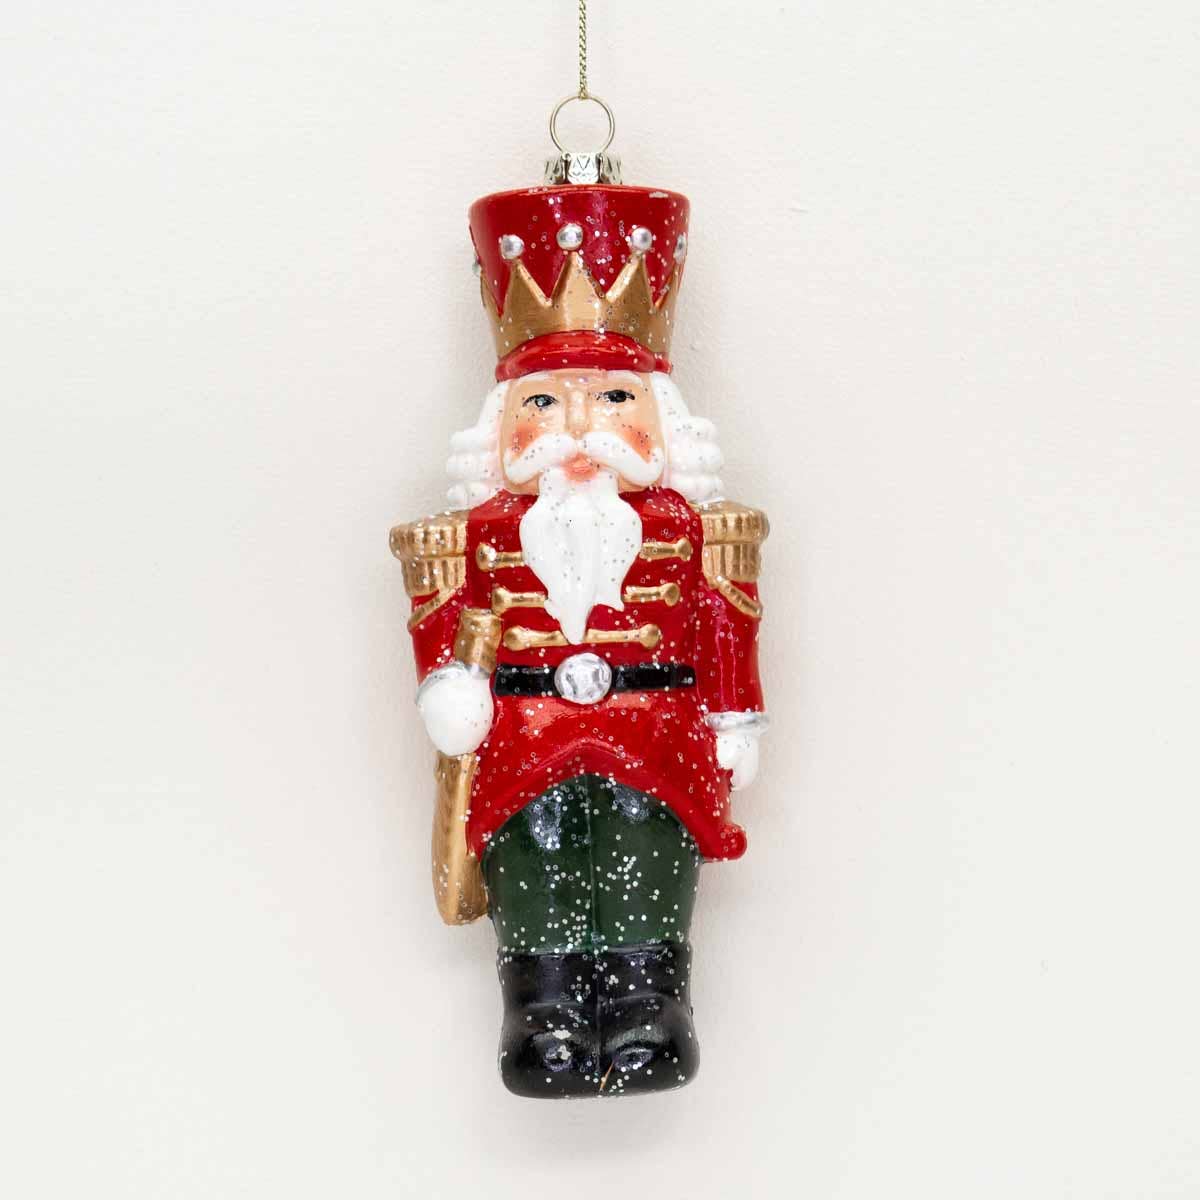 Royal Nutcracker Ornament   Red/Black   2.5x5.75 - Pretty Crafty Lady Shop